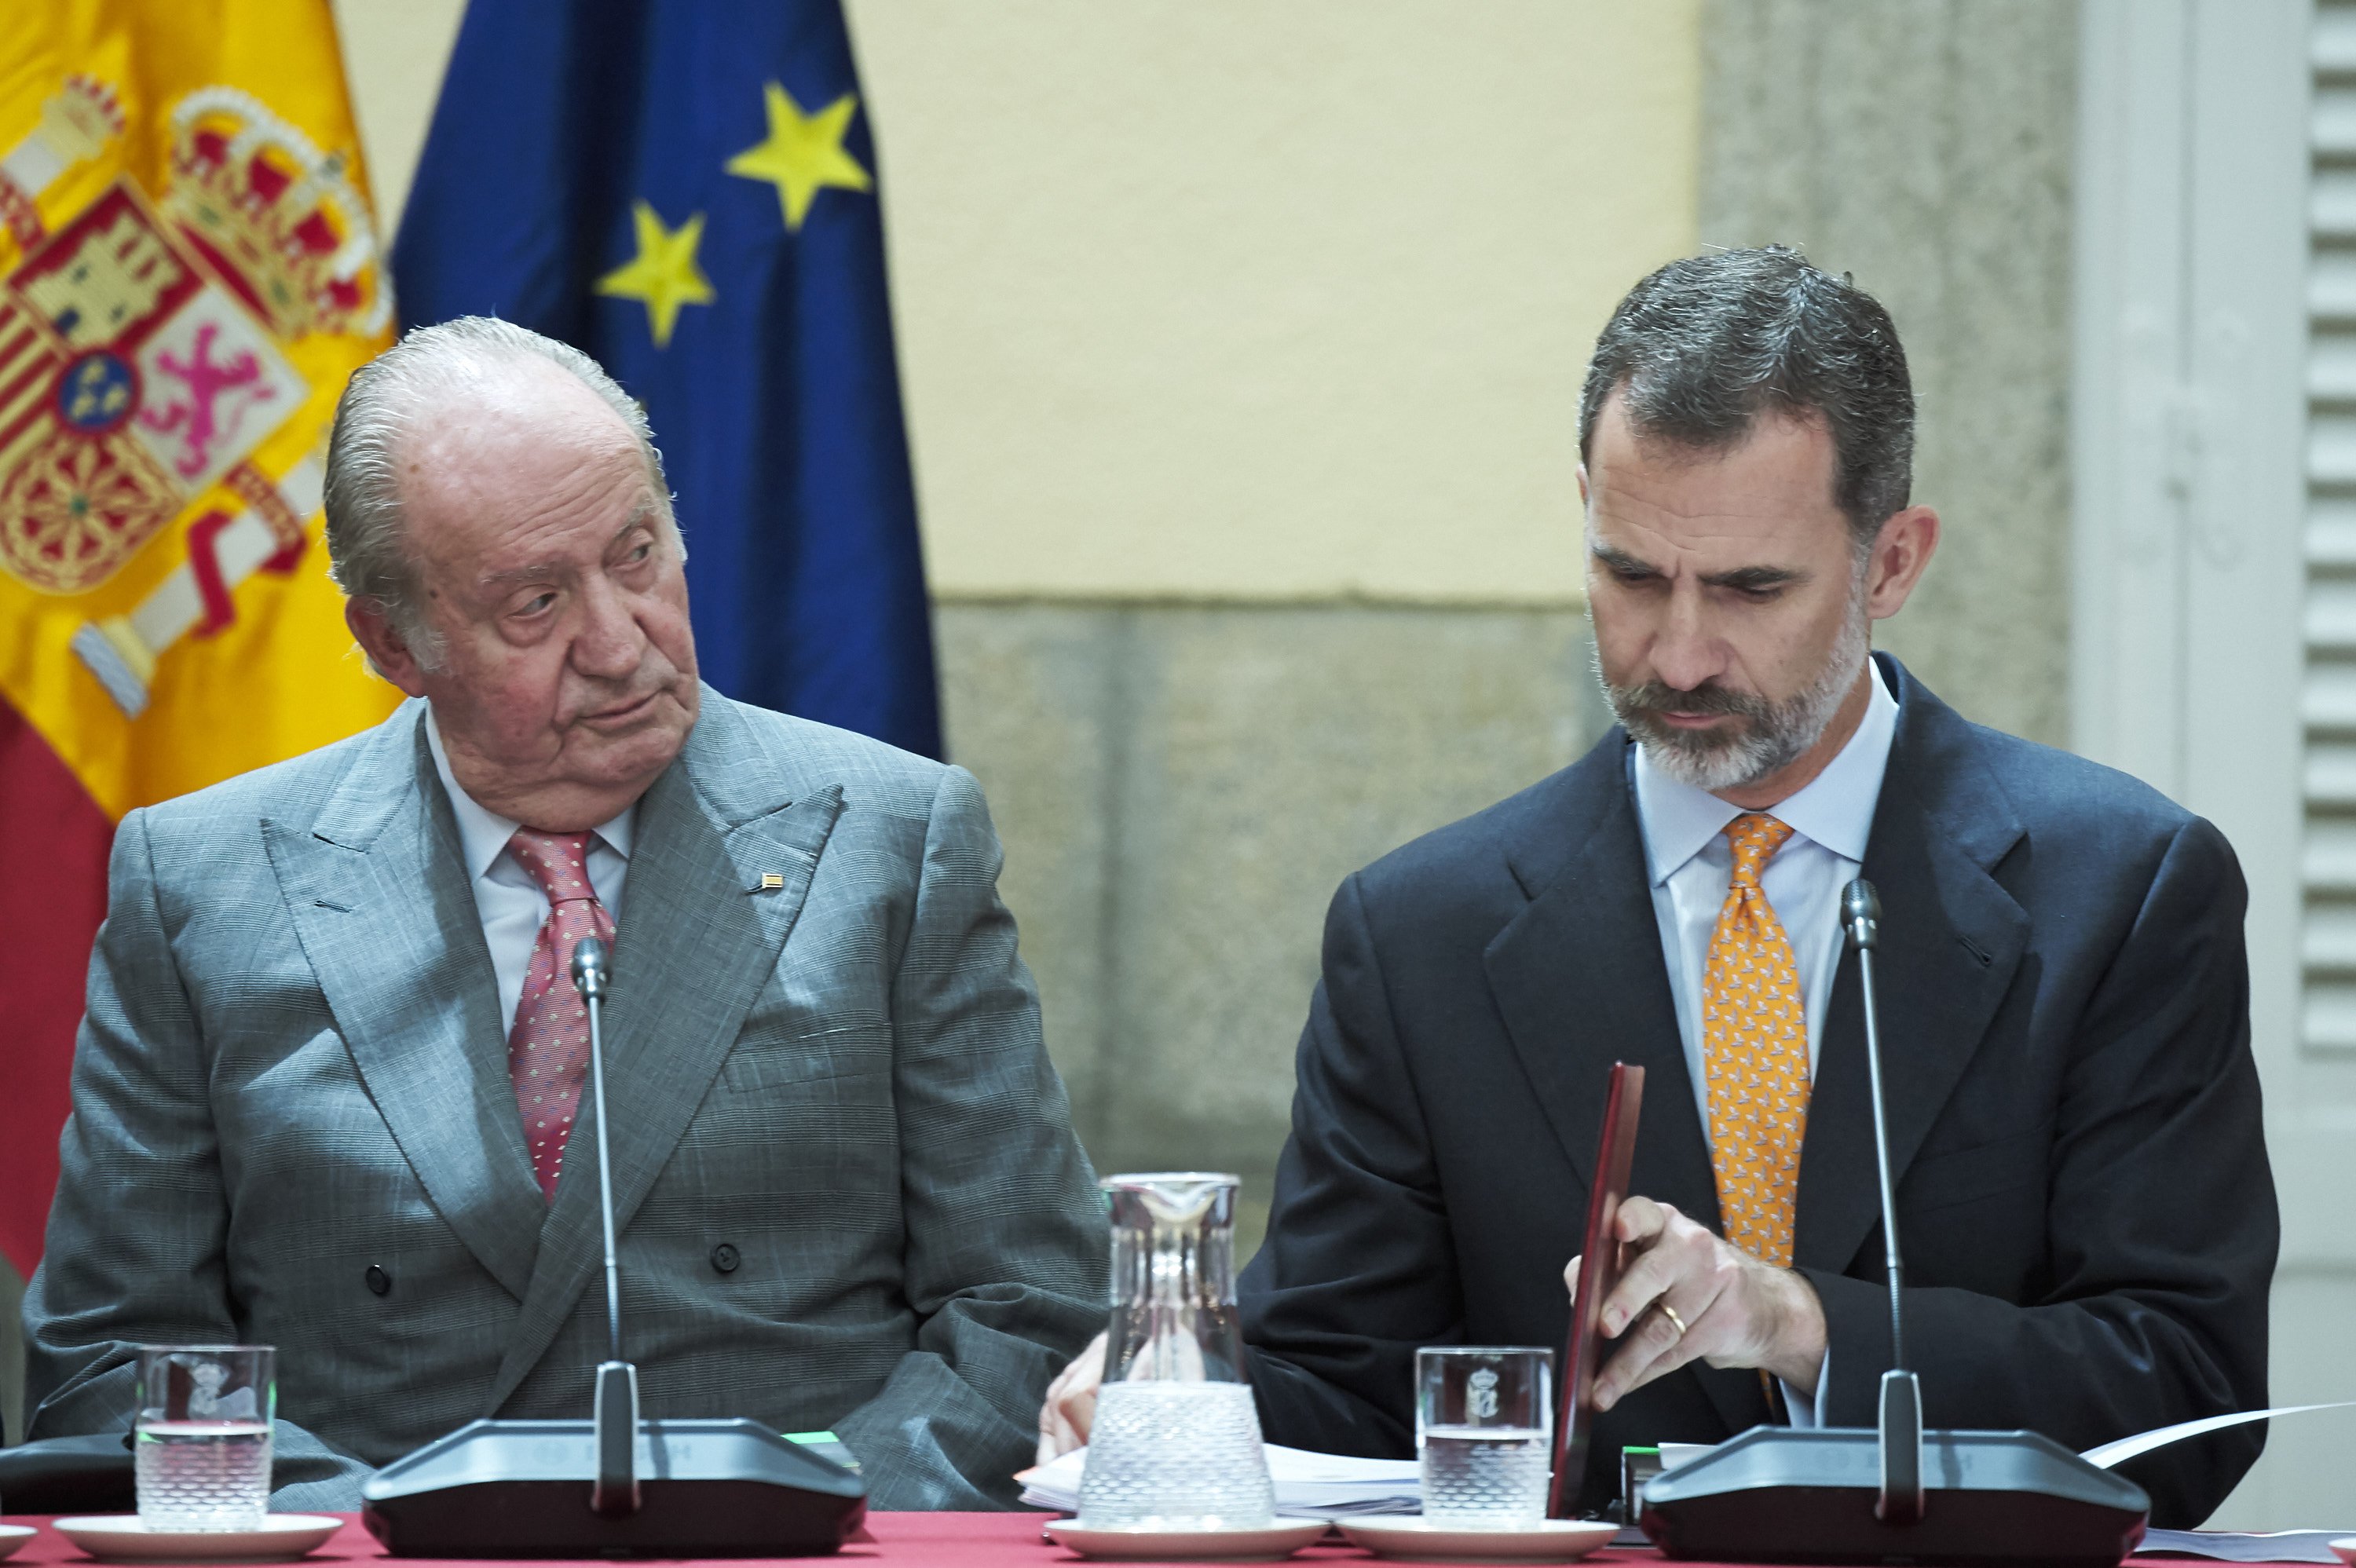 Le roi Felipe VI d'Espagne et son fils le roi Juan Carlos lors de la réunion du COTEC au palais El Pardo le 31 mai 2017 à Madrid, en Espagne. / Source : Getty Images